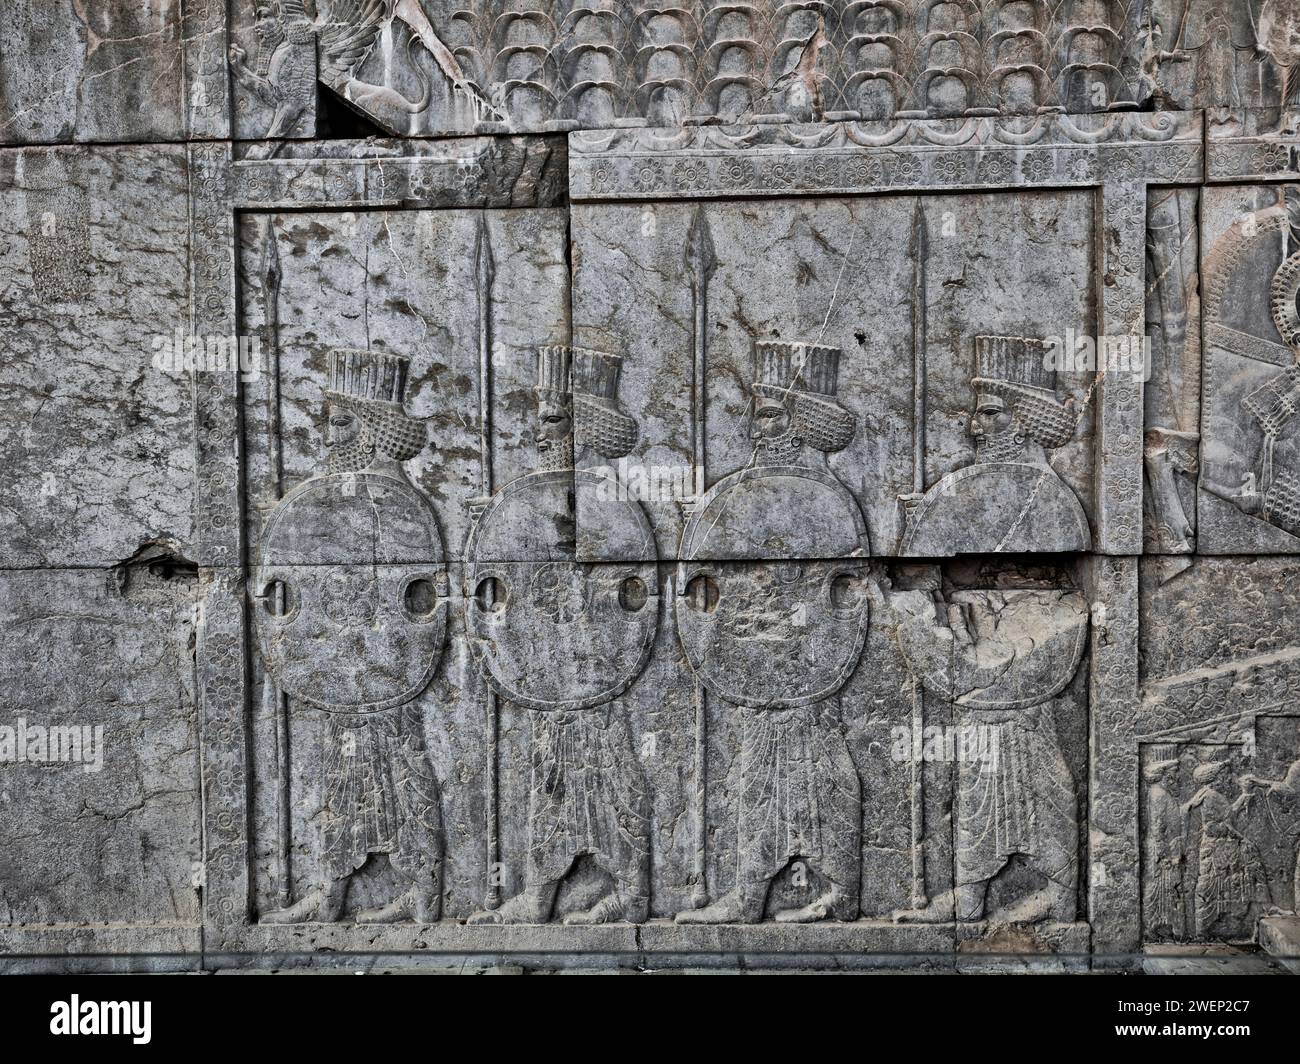 Guerriers perses portant boucliers et lances, bas-relief à Persépolis, capitale cérémonielle de l'Empire achéménide (550–330 av. J.-C.). Province de Fars, Iran. Banque D'Images